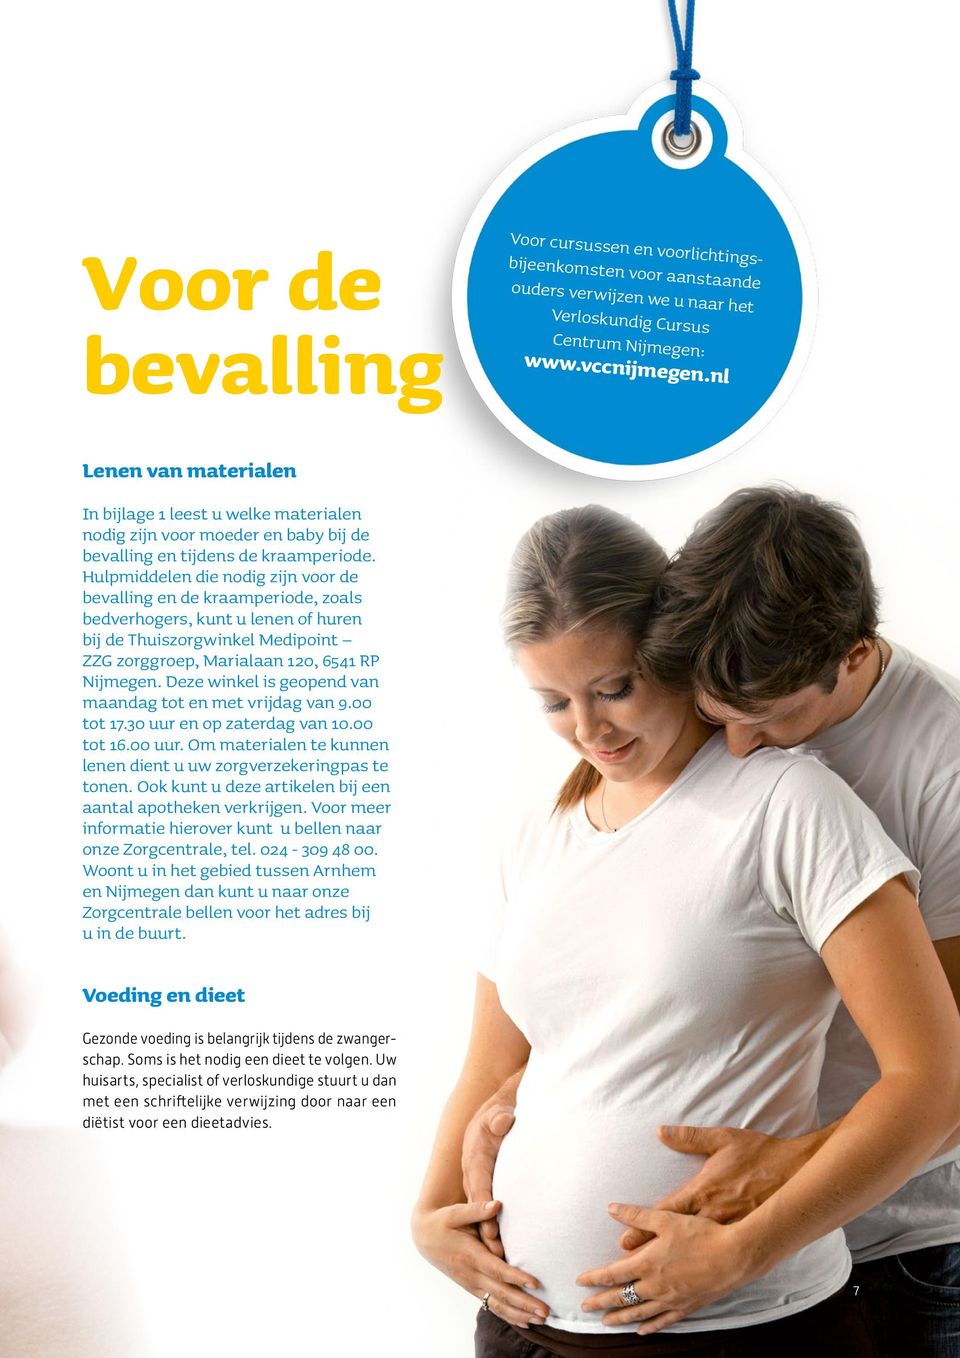 Hulpmiddelen die nodig zijn voor de bevalling en de kraamperiode, zoals bedverhogers, kunt u lenen of huren bij de Thuiszorgwinkel Medipoint ZZG zorggroep, Marialaan 120, 6541 RP Nijmegen.